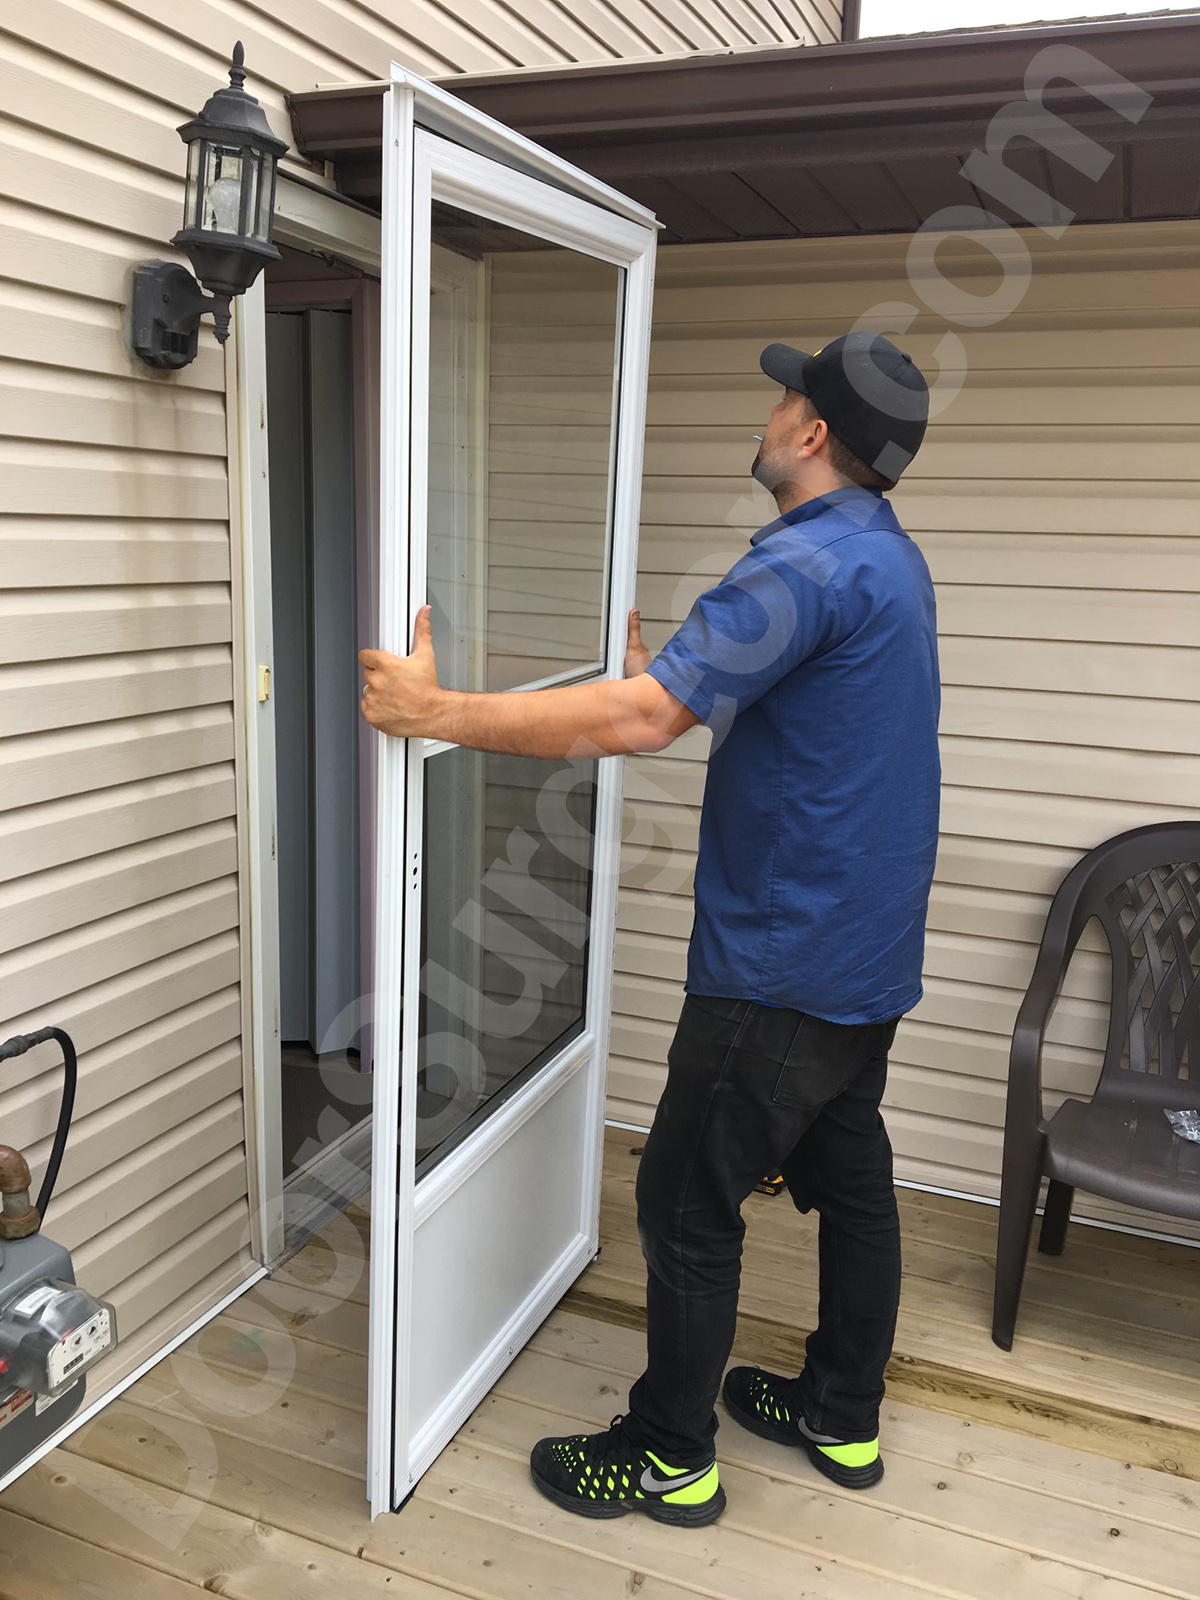 Door Surgon new storm door mobile installation service technician